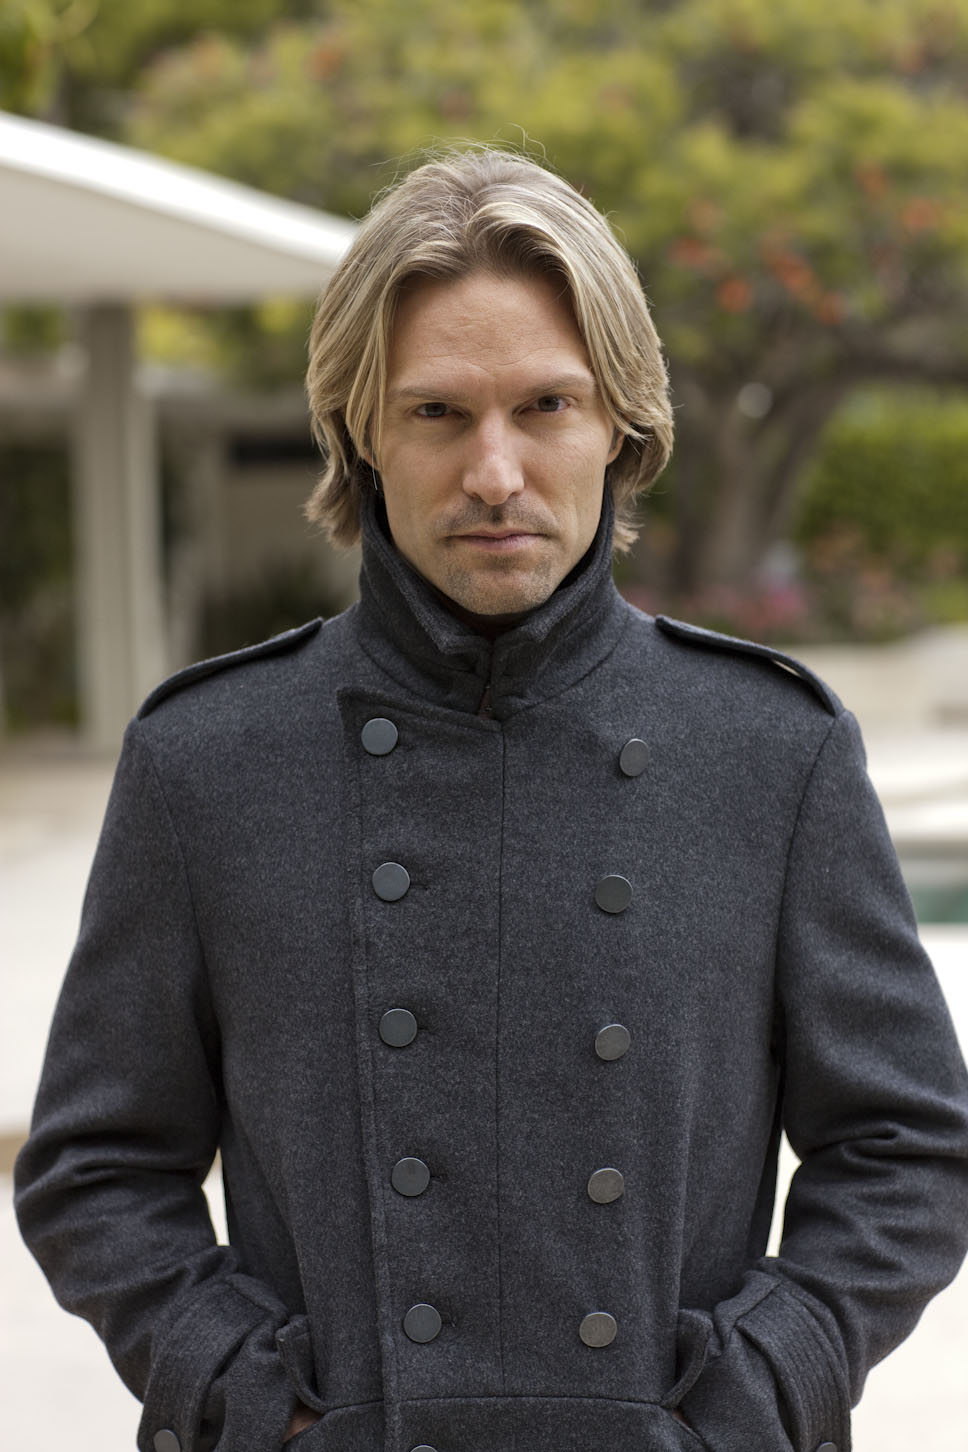 Eric Whitacre